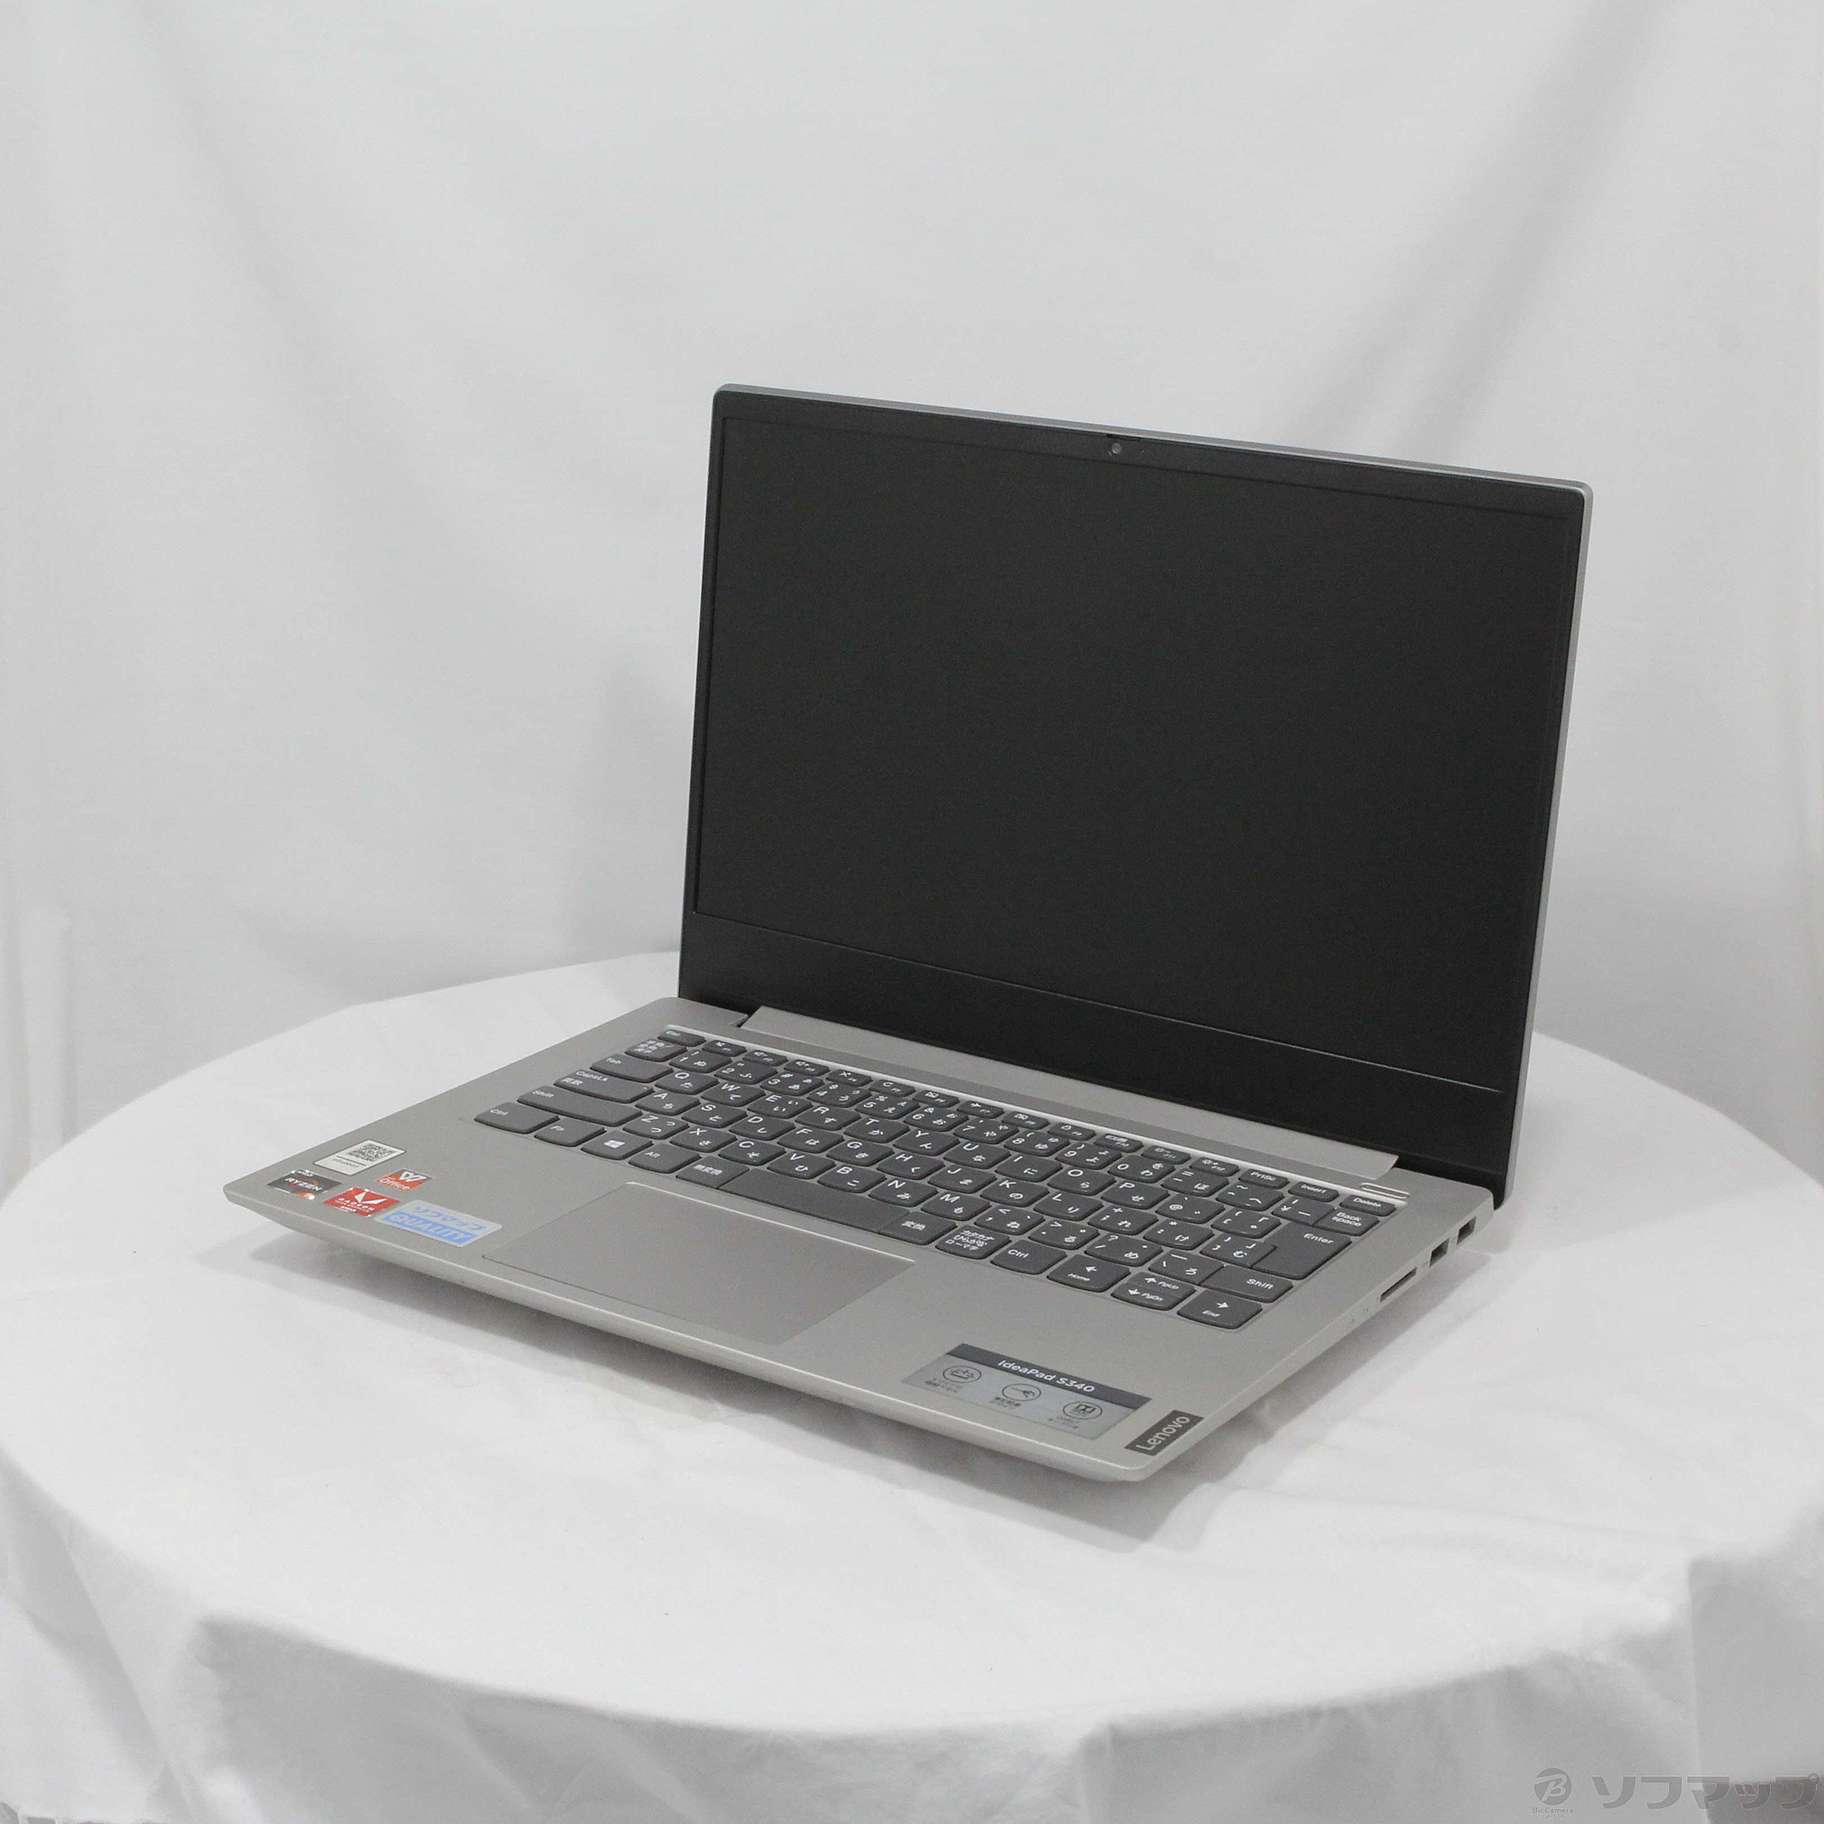 Lenovo ノートPC IdeaPad S340 プラチナグレー 購入証明書付